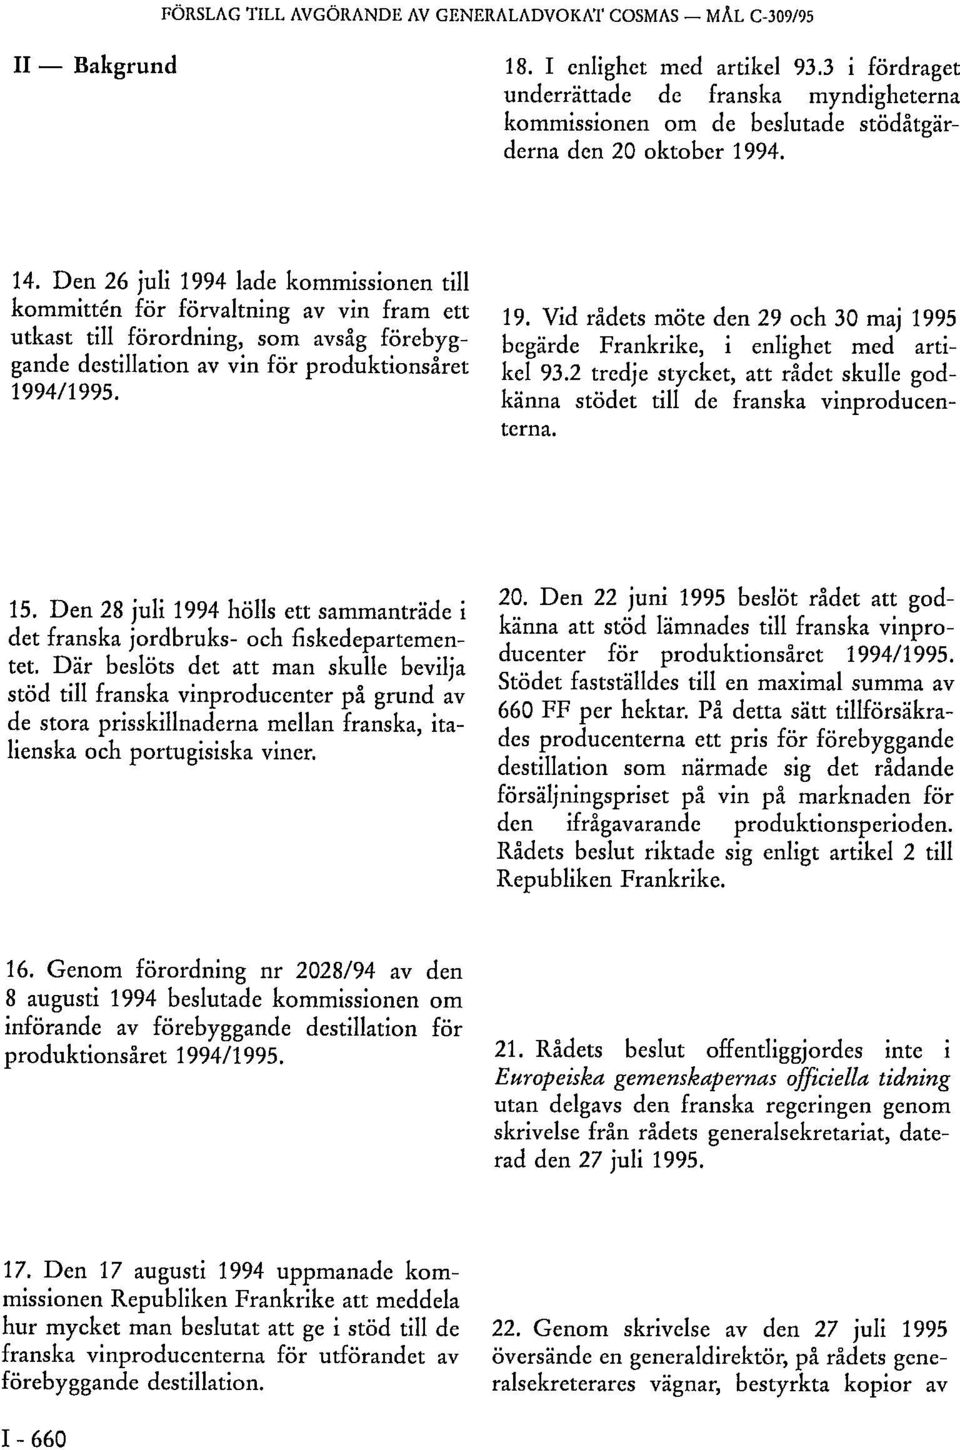 Den 26 juli 1994 lade kommissionen till kommittén för förvaltning av vin fram ett utkast till förordning, som avsåg förebyggande destillation av vin för produktionsåret 1994/1995. 19. Vid rådets möte den 29 och 30 maj 1995 begärde Frankrike, i enlighet med artikel 93.